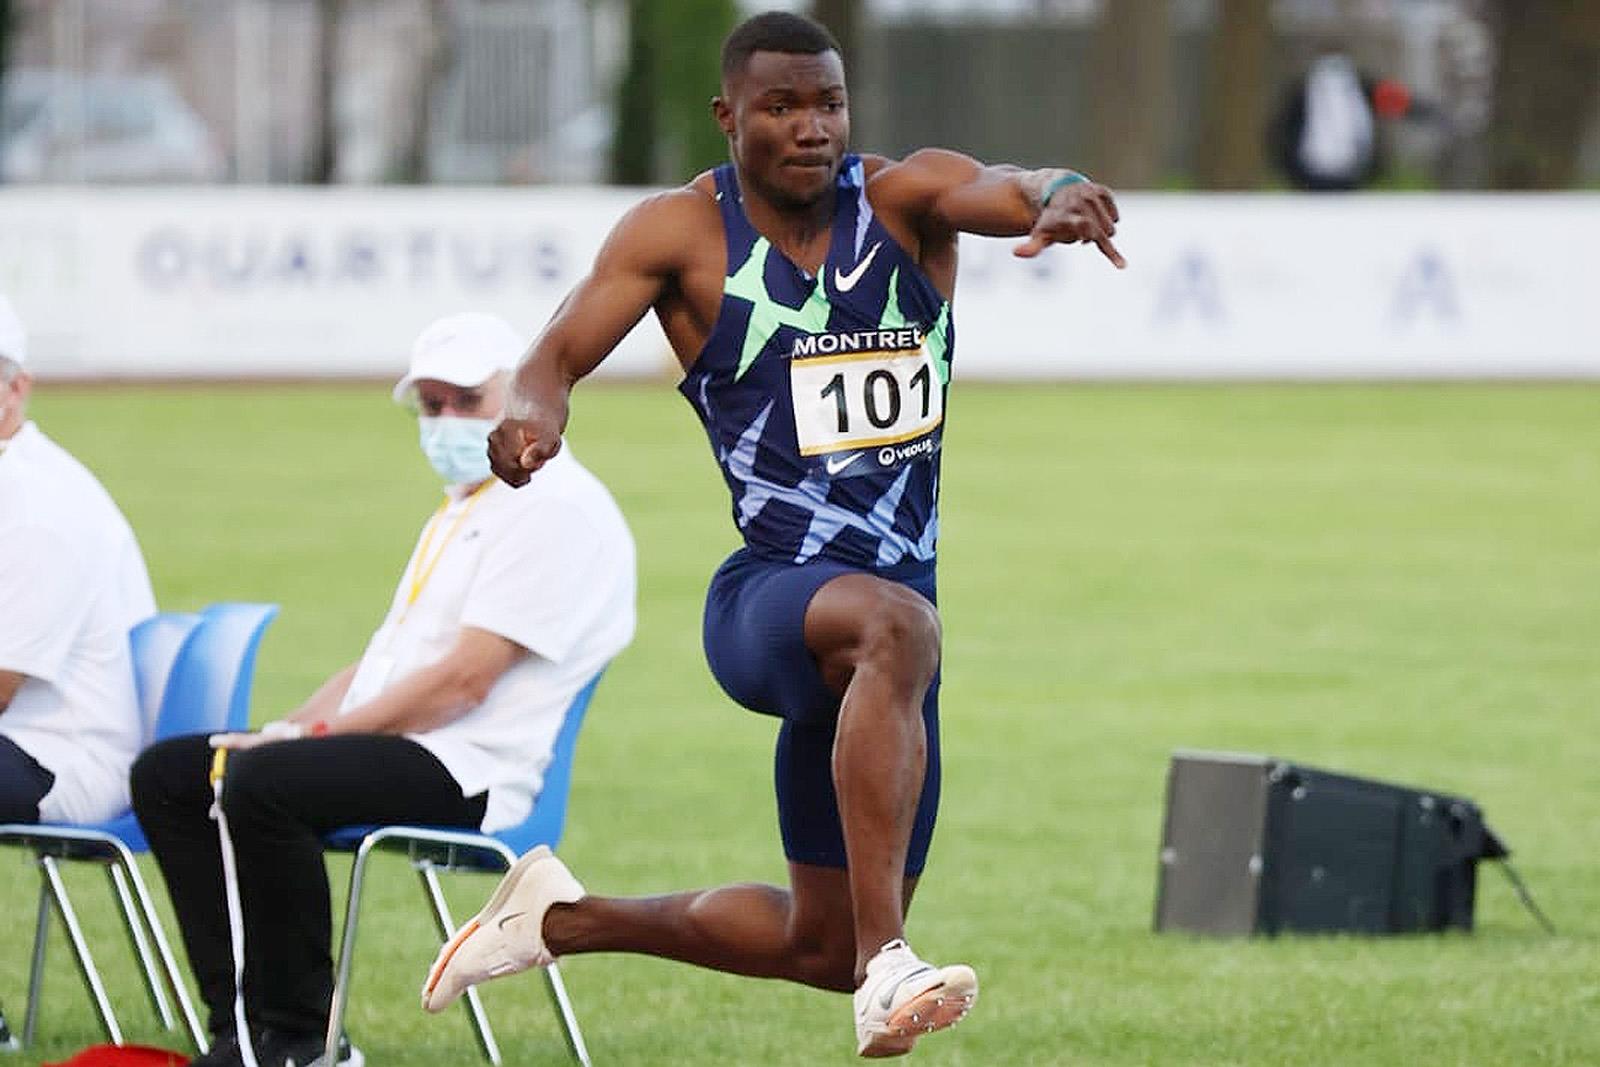 Knighton, Jacksonville’de 20.11’lik derecesiyle Bolt’un U18 200 metrede dünya rekorunu kırdı |  RAPOR